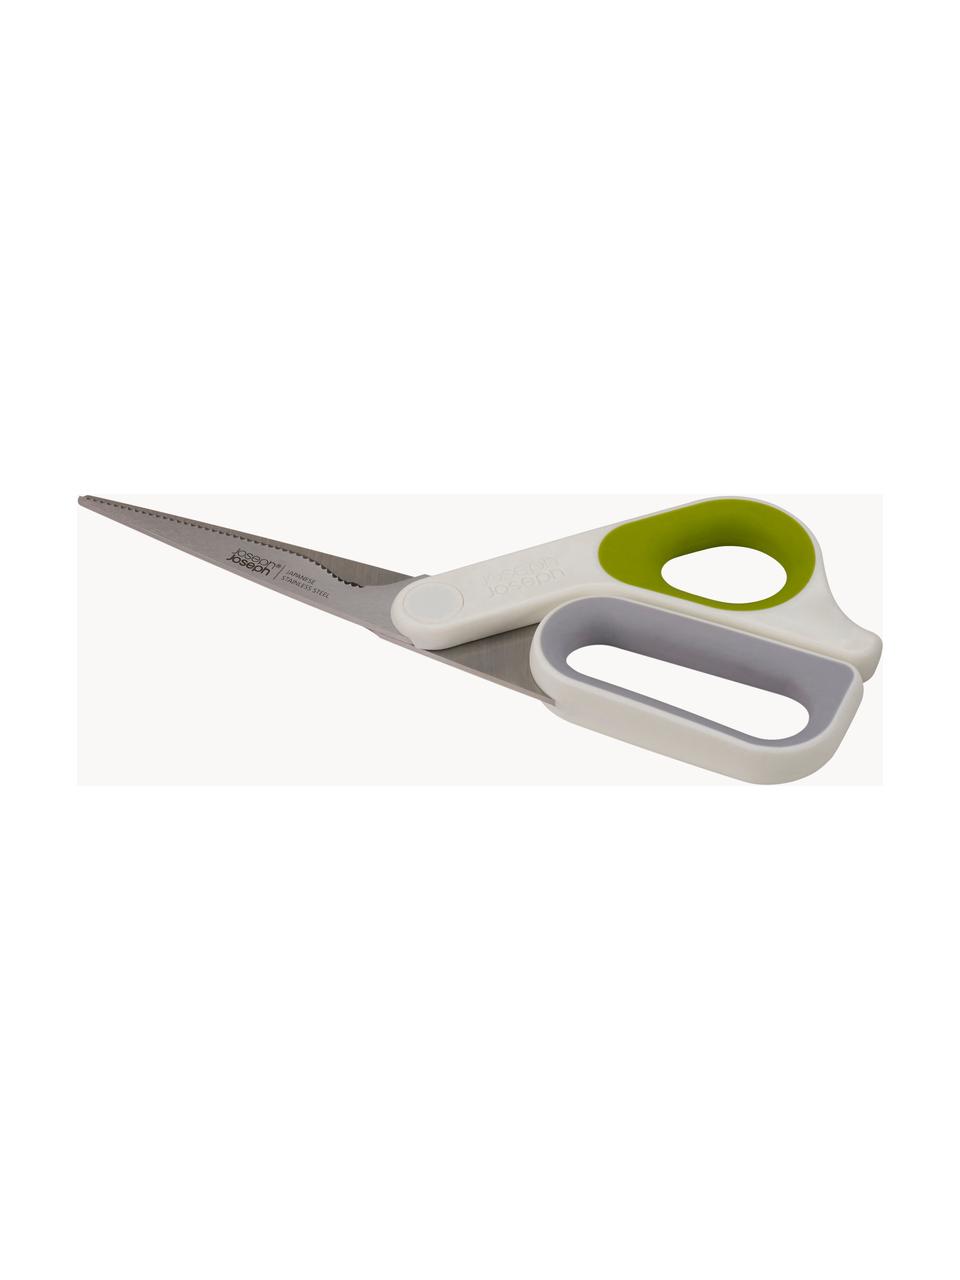 Keukenschaar PowerGrip, Handvatten: silicone, Groen, lichtgrijs, Off White, B 9 x L 22 cm